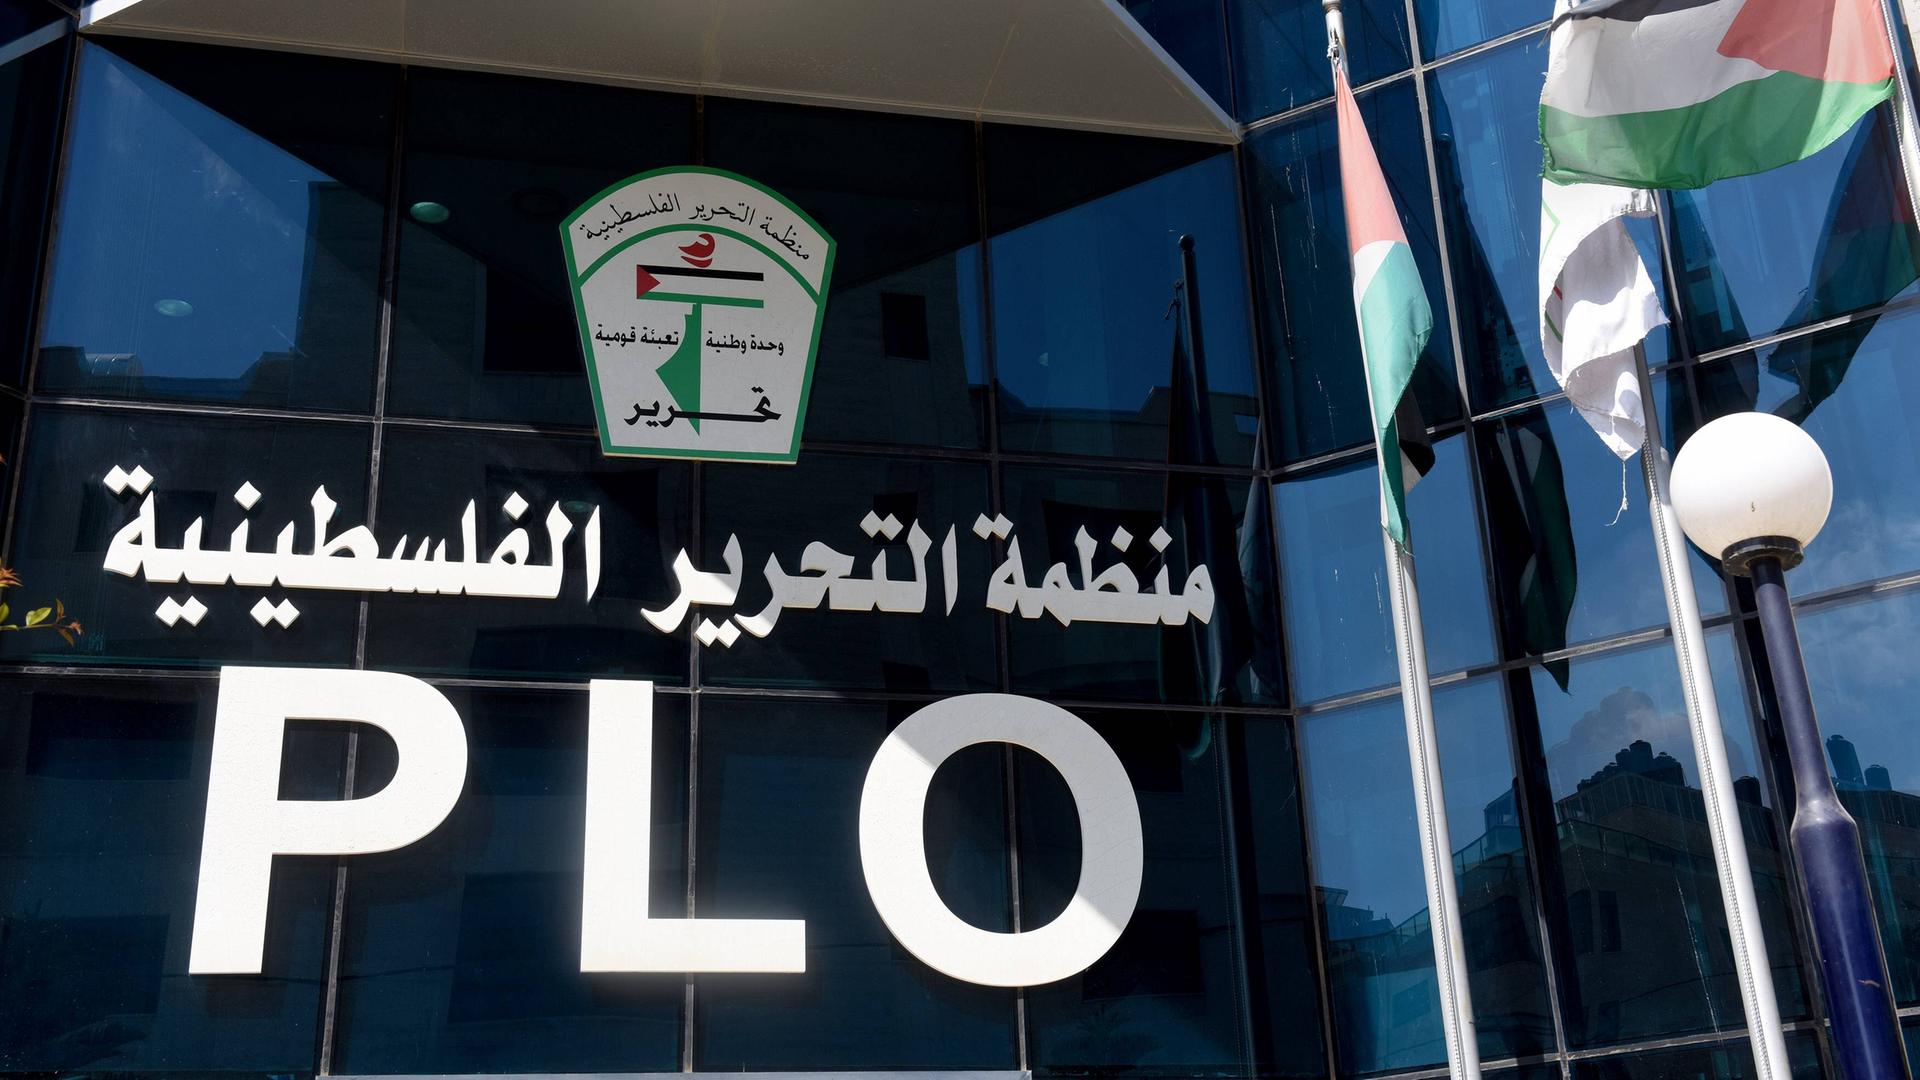 Logo der PLO, der Palästinensischen Befreiungsorganisation, vor ihrem Hauptquartier in Ramallah, Westjordanland.